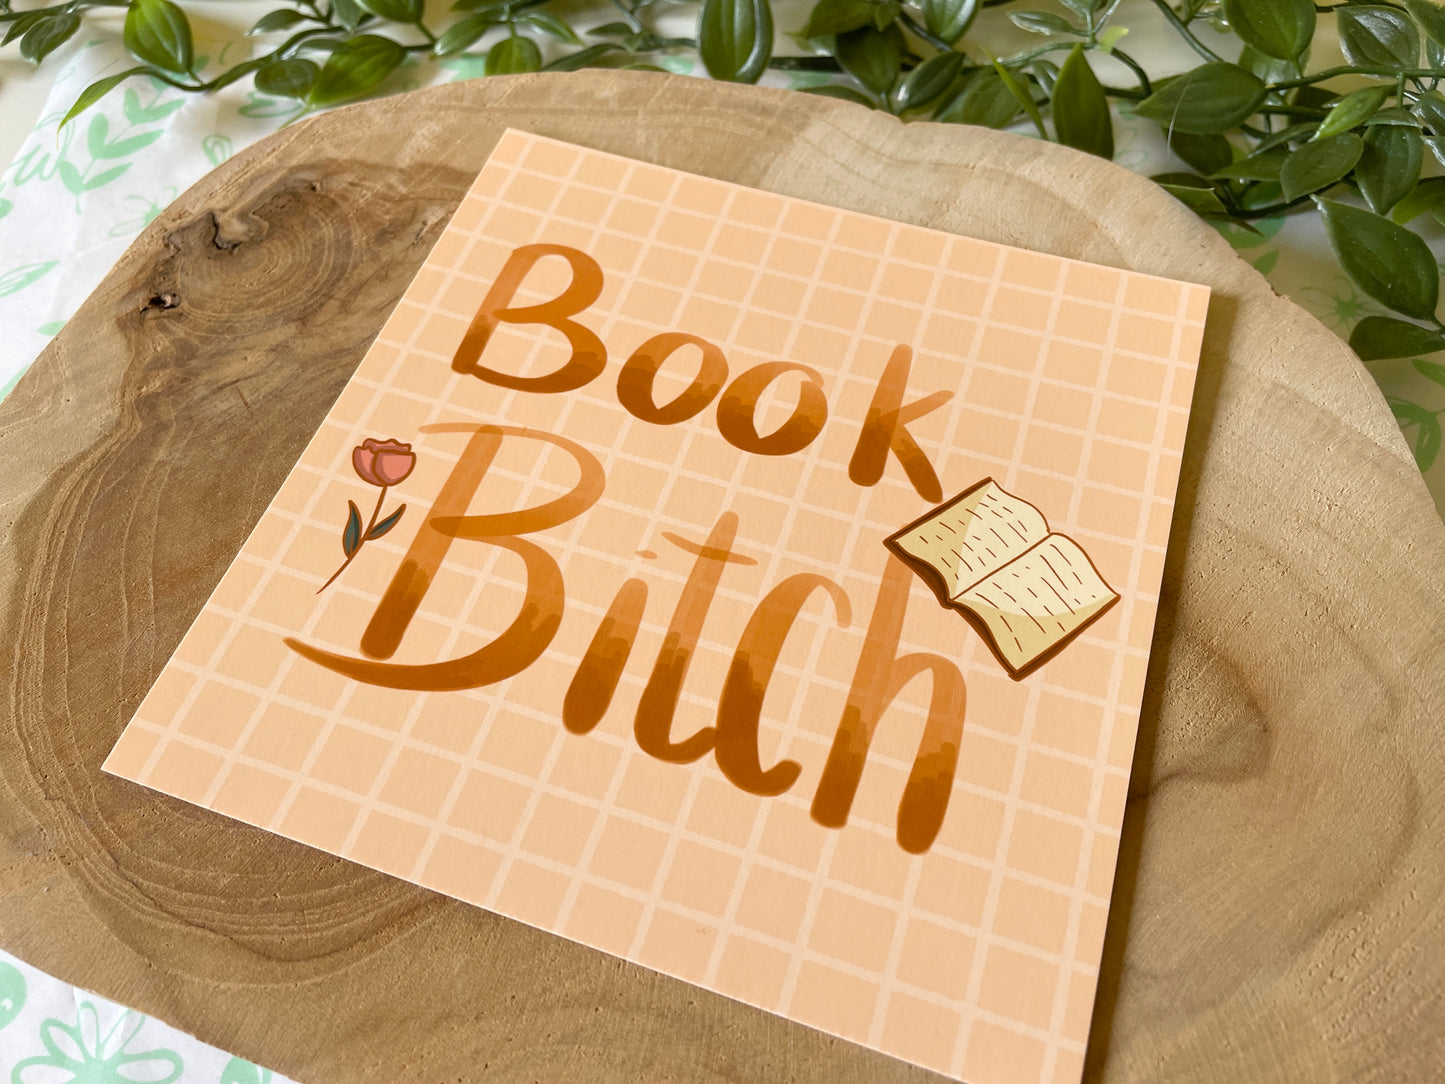 Impression carrée Book Bitch